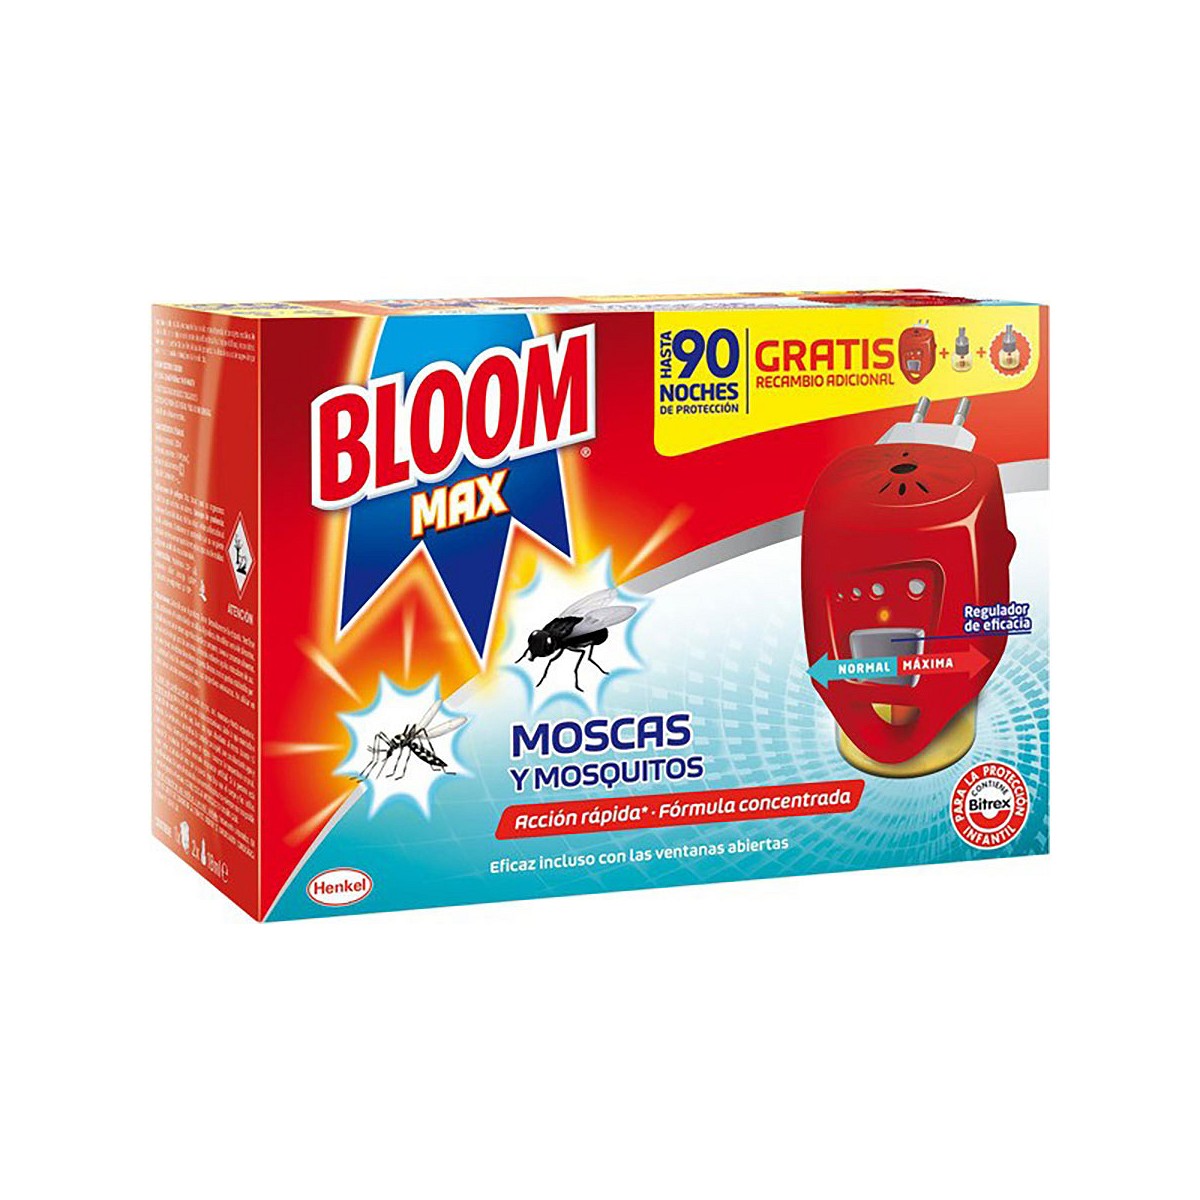 Insect bloom max eléctrico aparato+2 recambios (moscas y mosquitos)